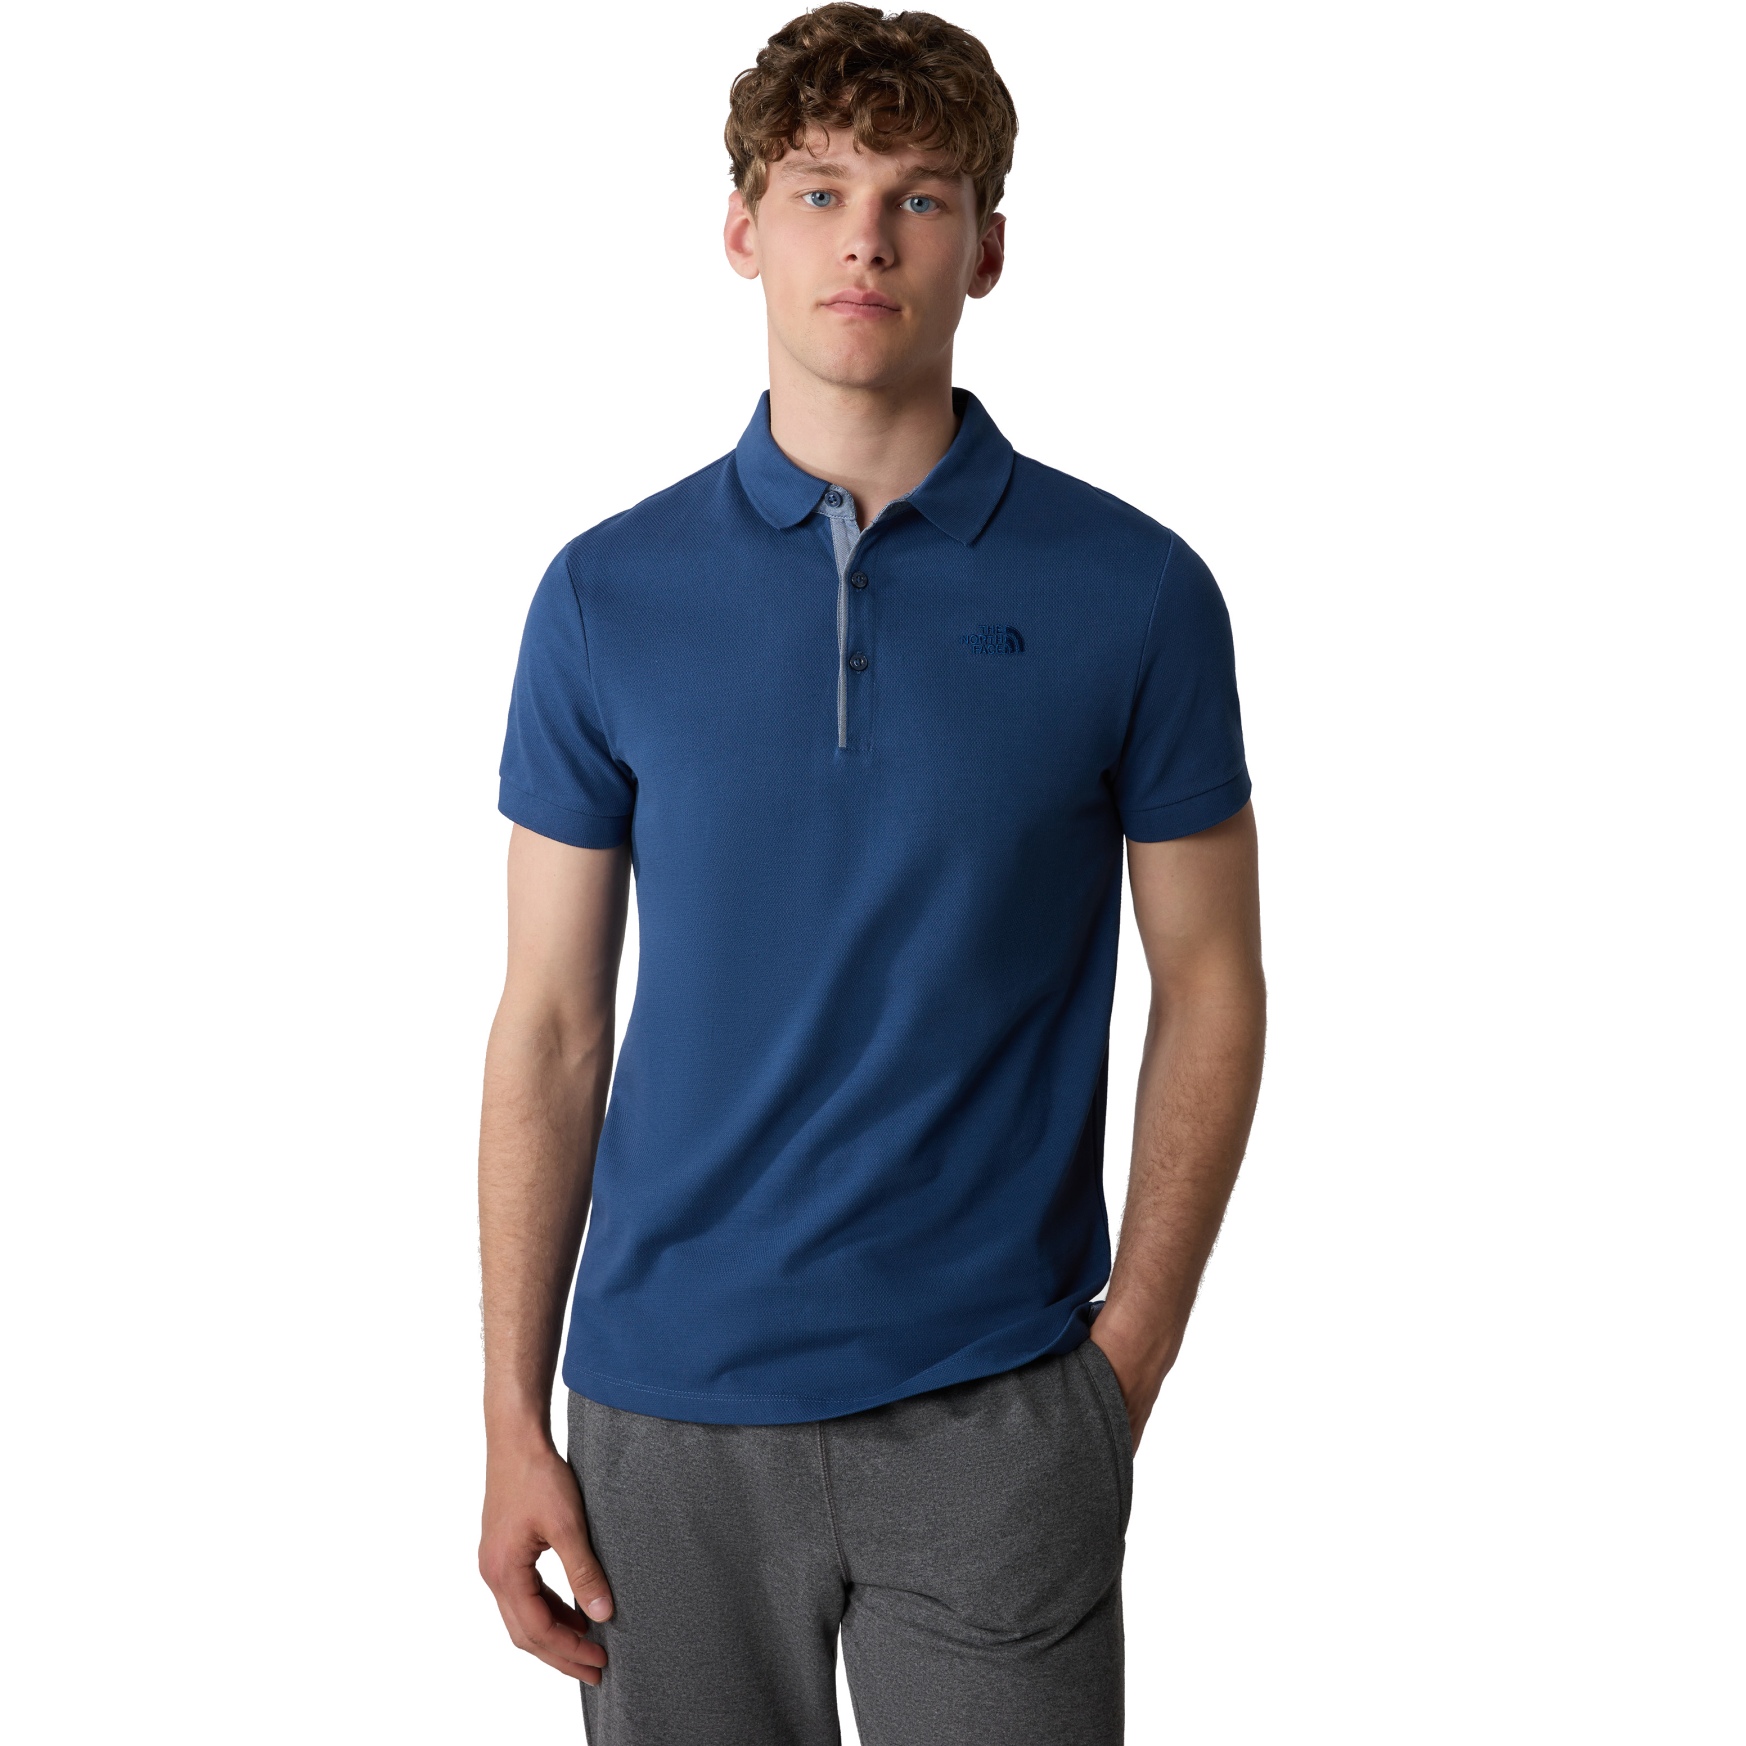 Produktbild von The North Face Premium Piqué Poloshirt Herren - Shady Blue